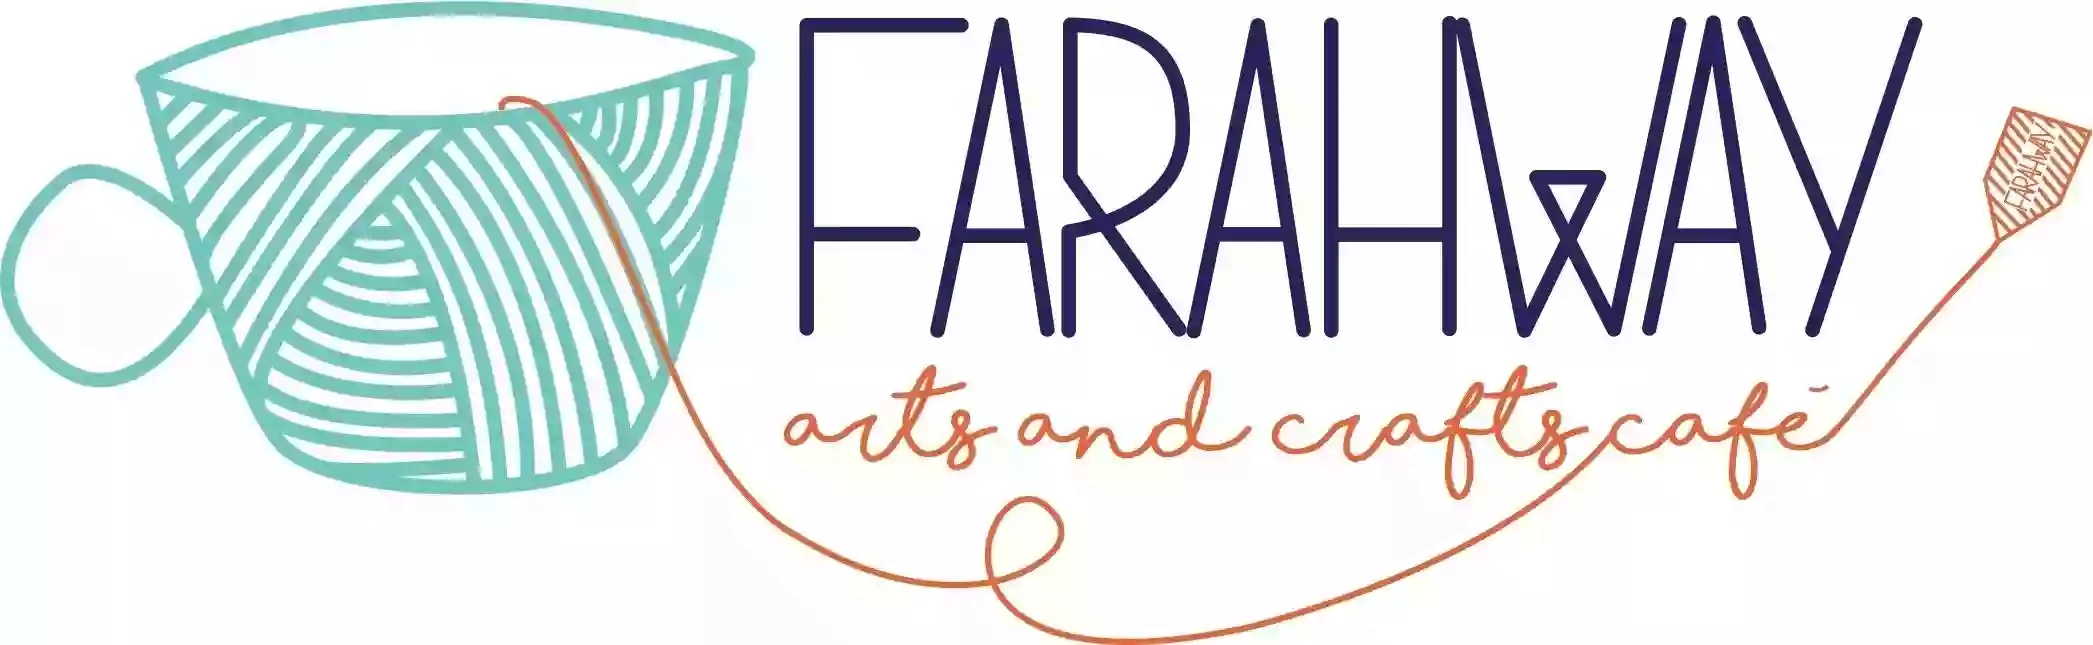 Farahway Arts and Crafts Café